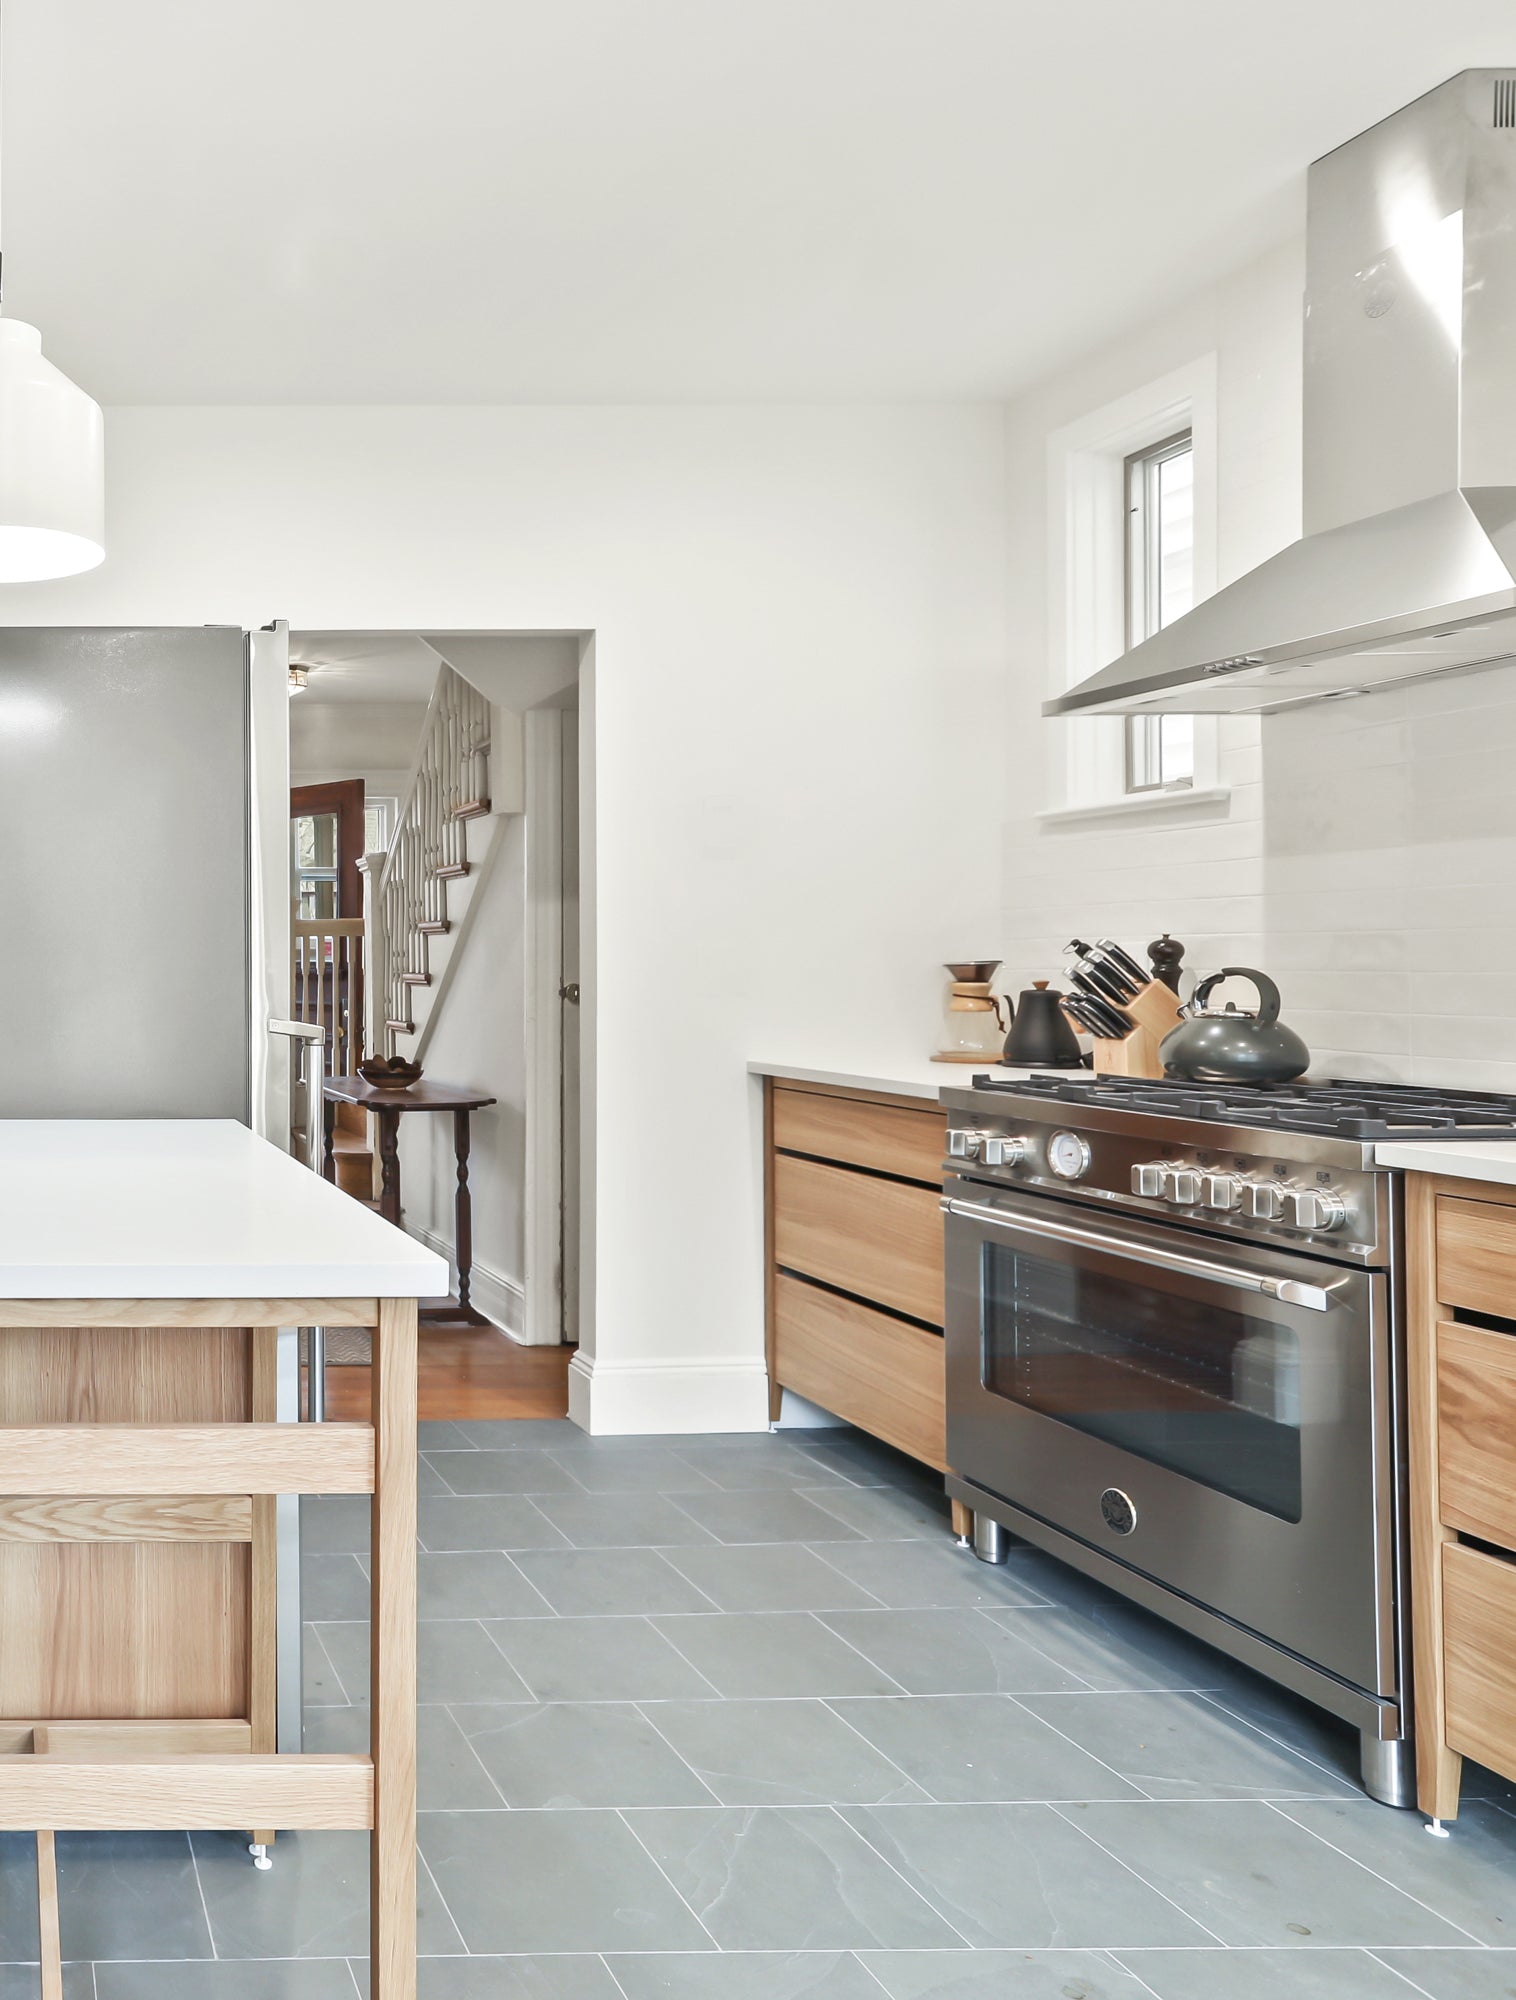 kitchen design, modular kitchen, freestanding kitchen, kitchen renovation, kitchen ideas, natural oak.